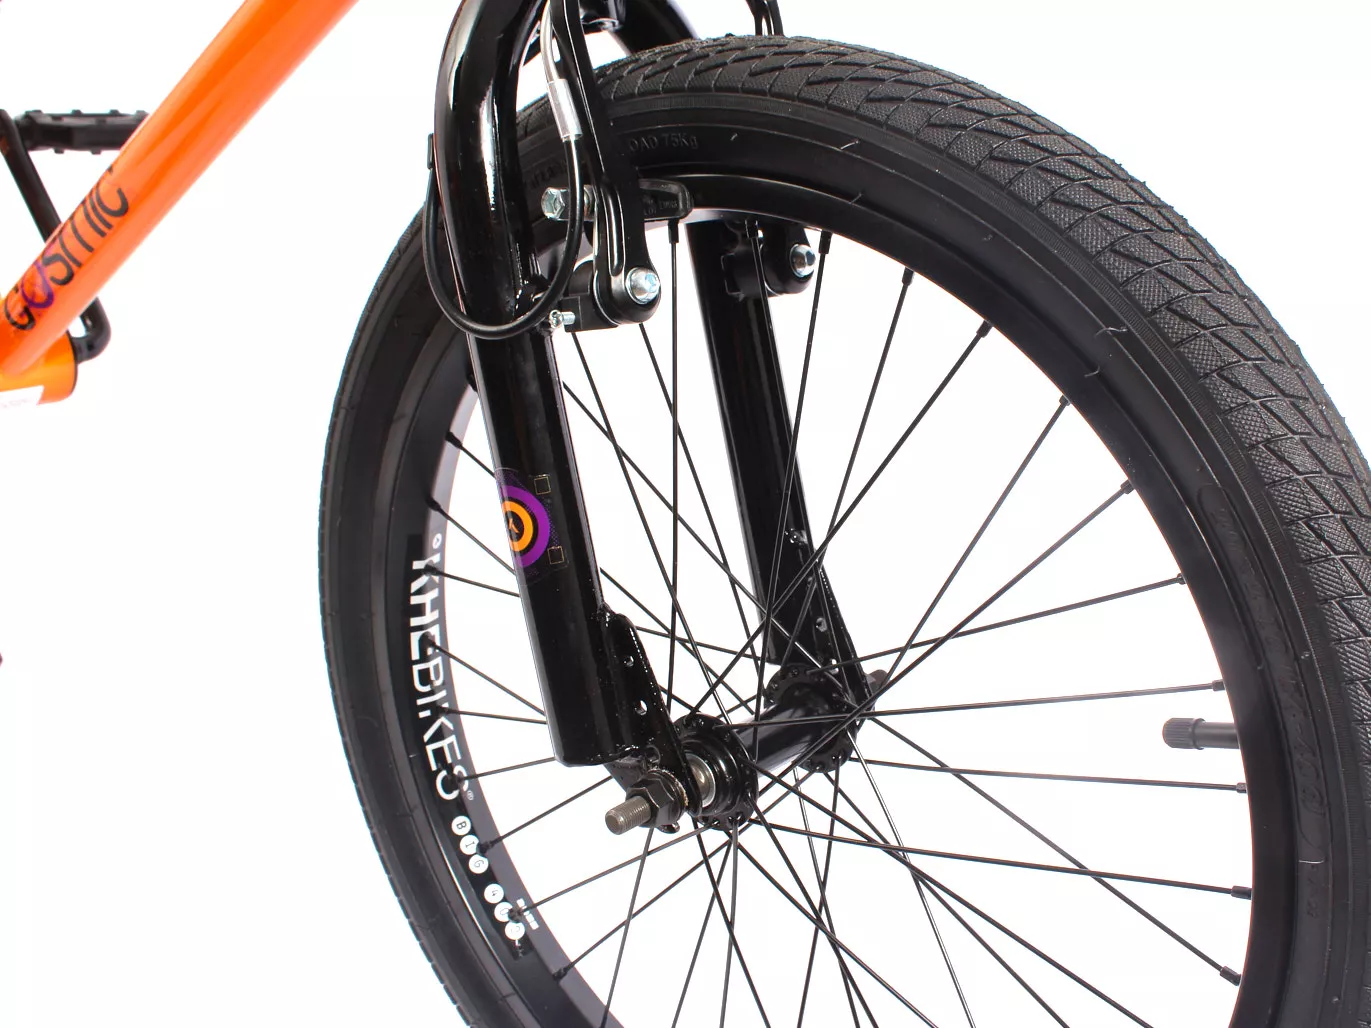 Bici BMX KHE COSMIC 20 pollici 11.1kg arancione